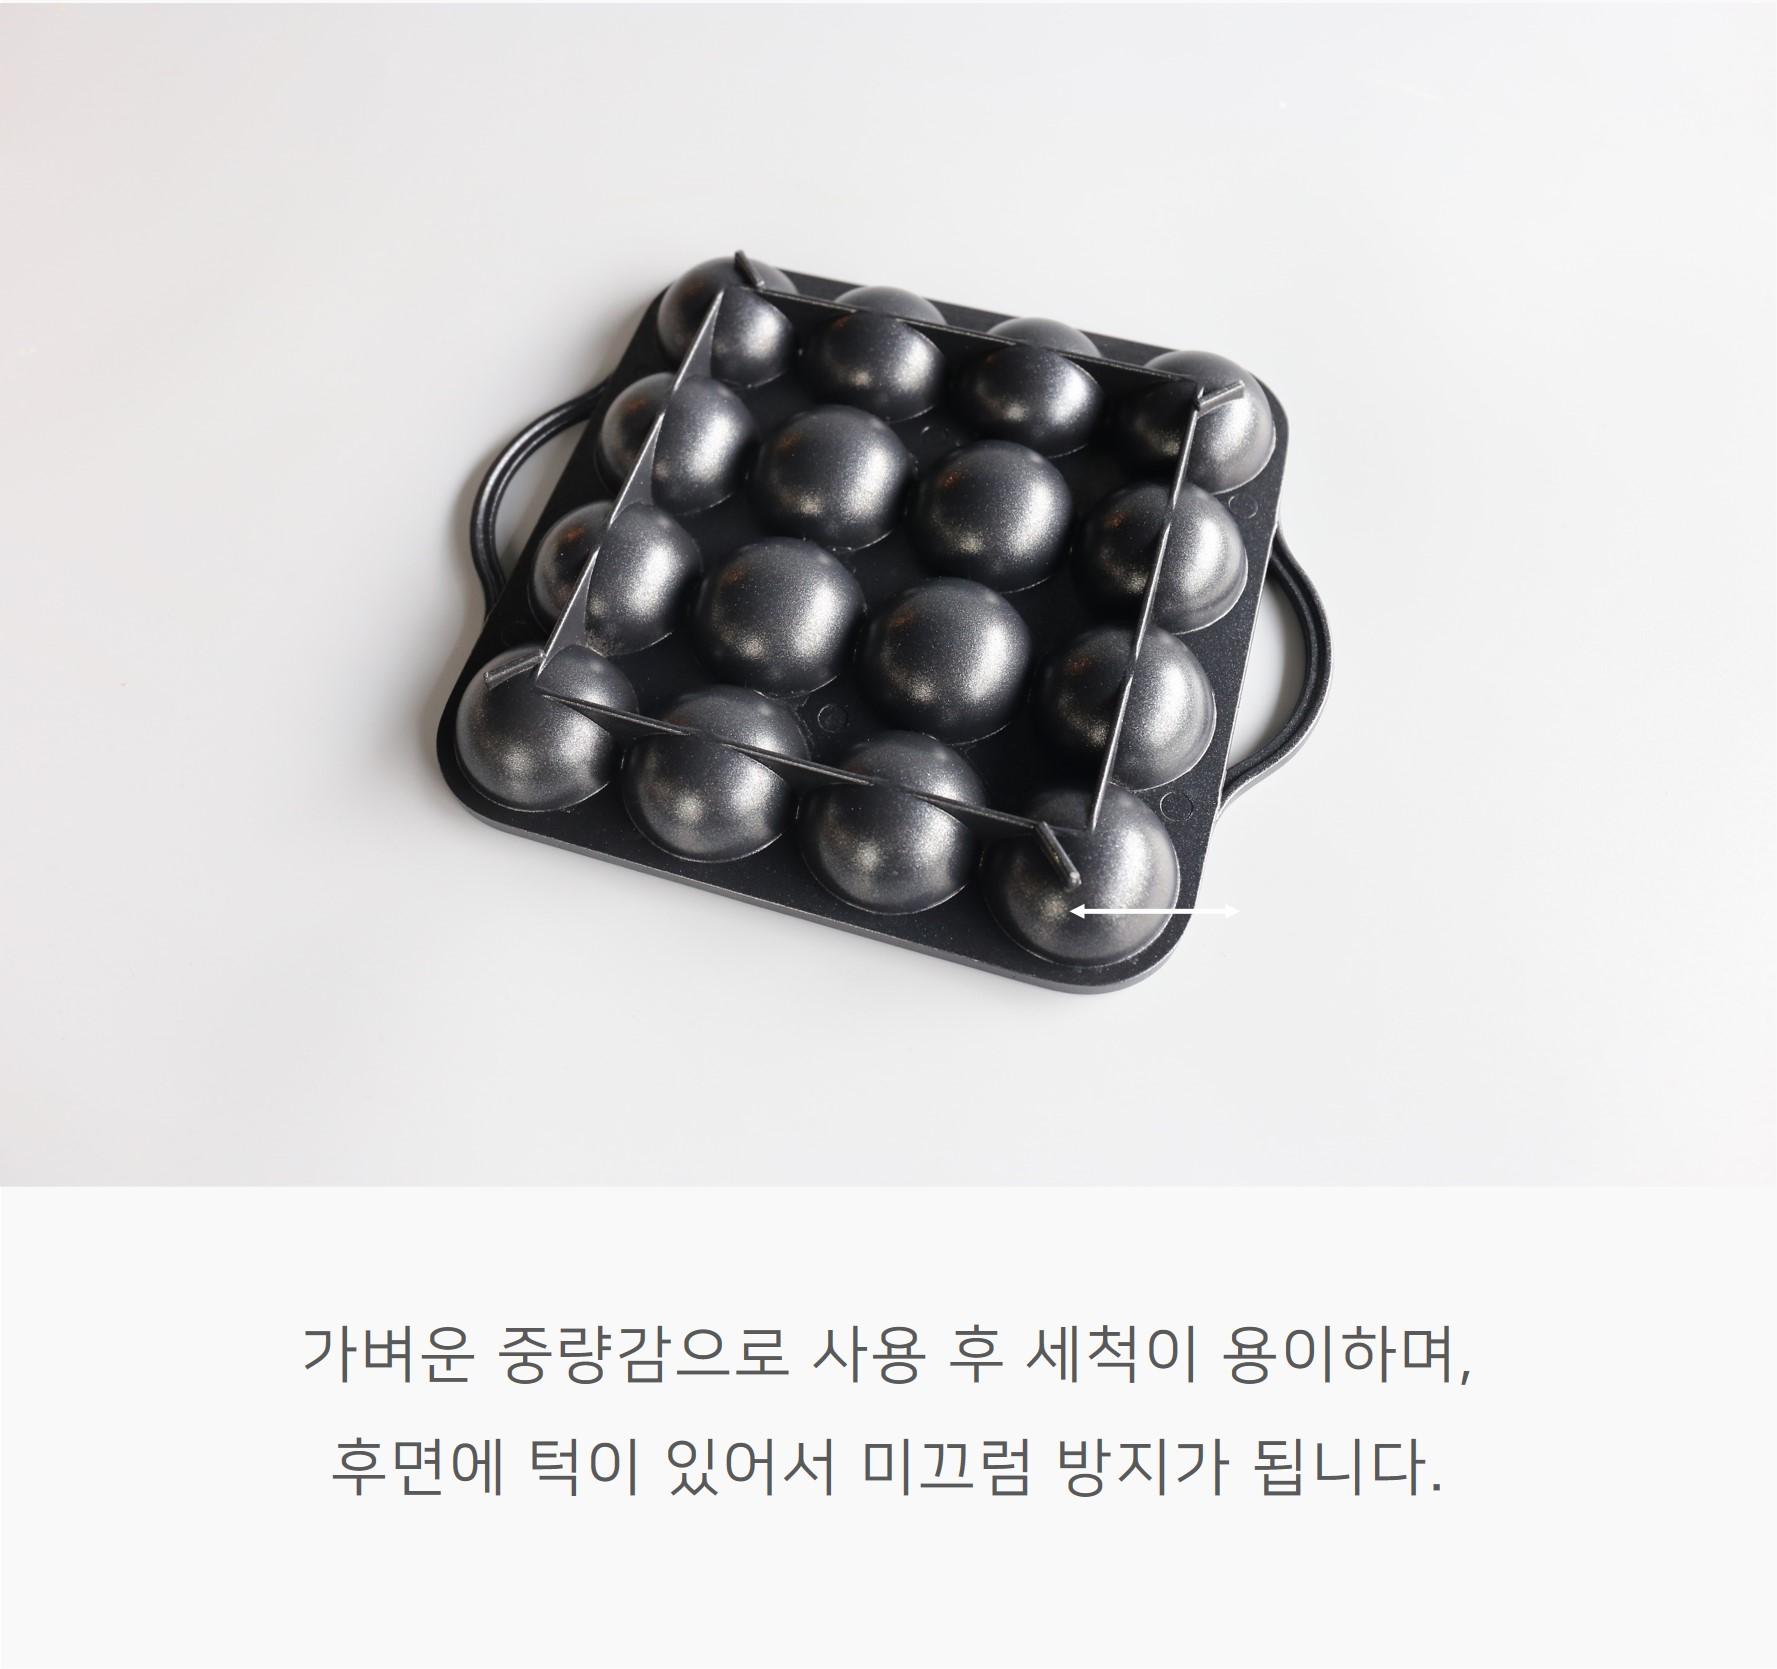 韓國食品-[이지쿠커] 타코야끼팬 16구